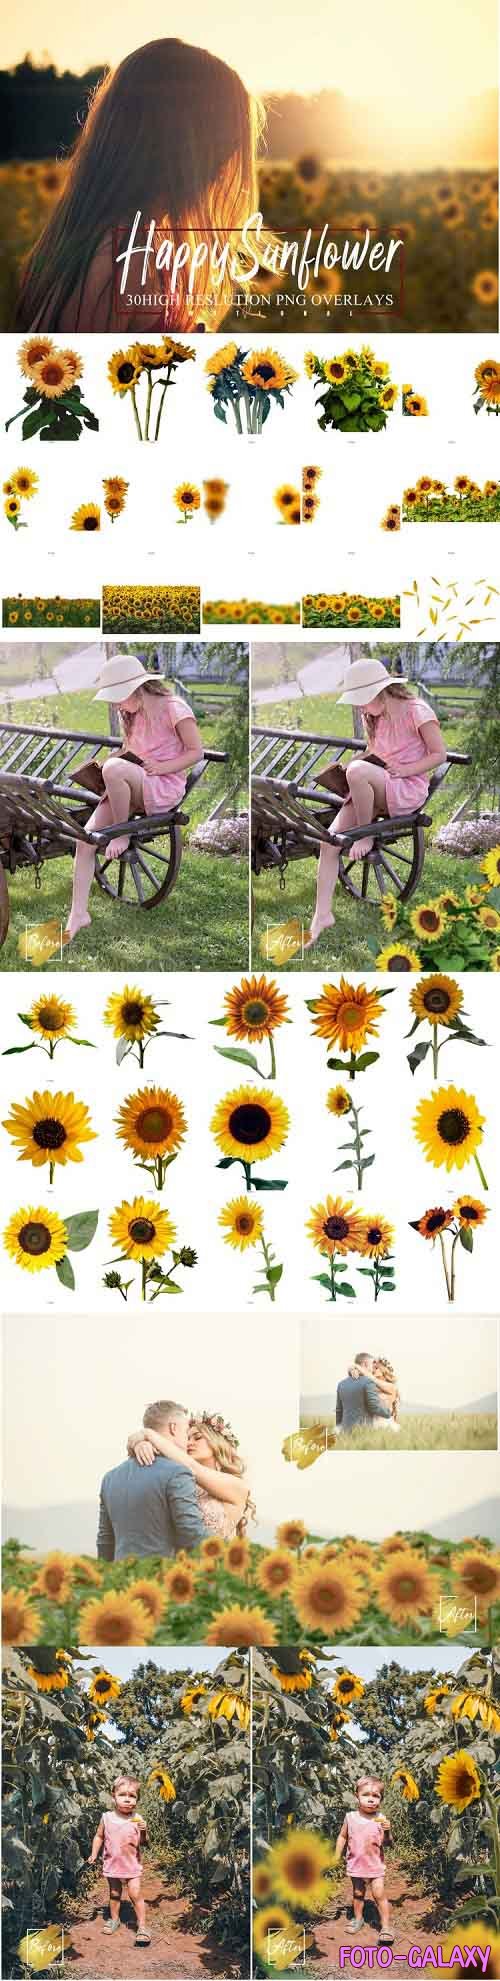 30 Happy Sunflower Photo Overlays, Flower summer spring - 1030557